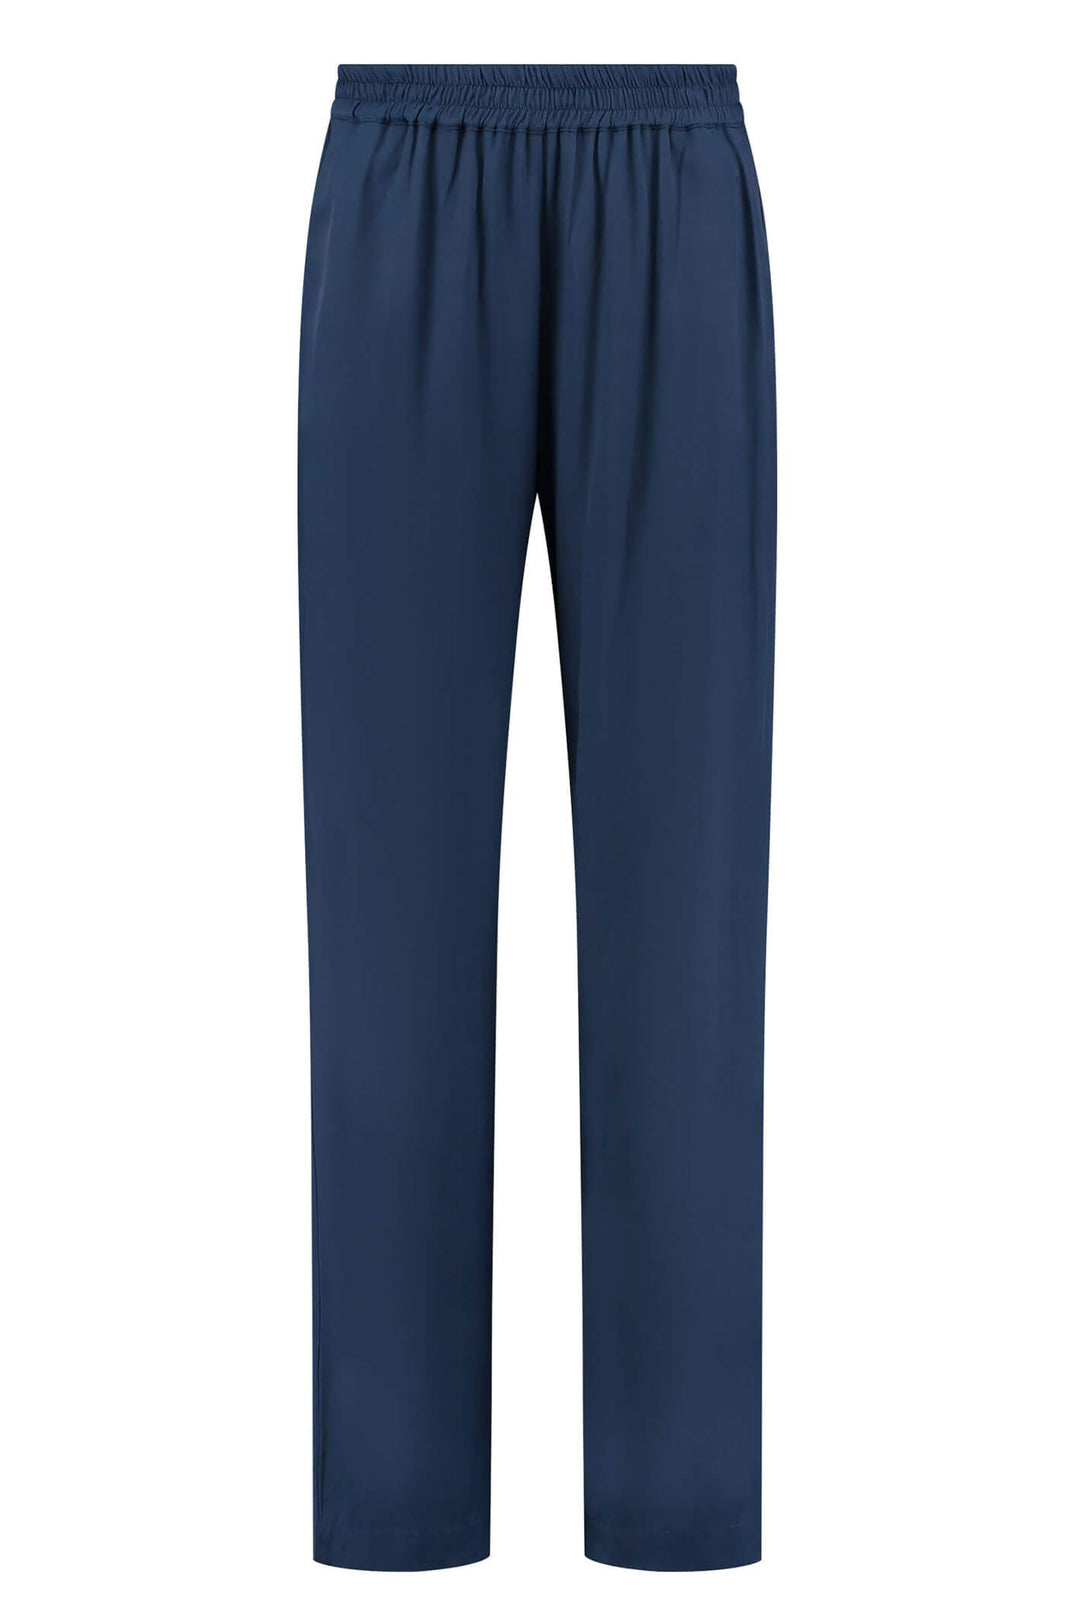 POM Amsterdam SP6856 Indigo Blue Trouser - Shirley Allum Boutique